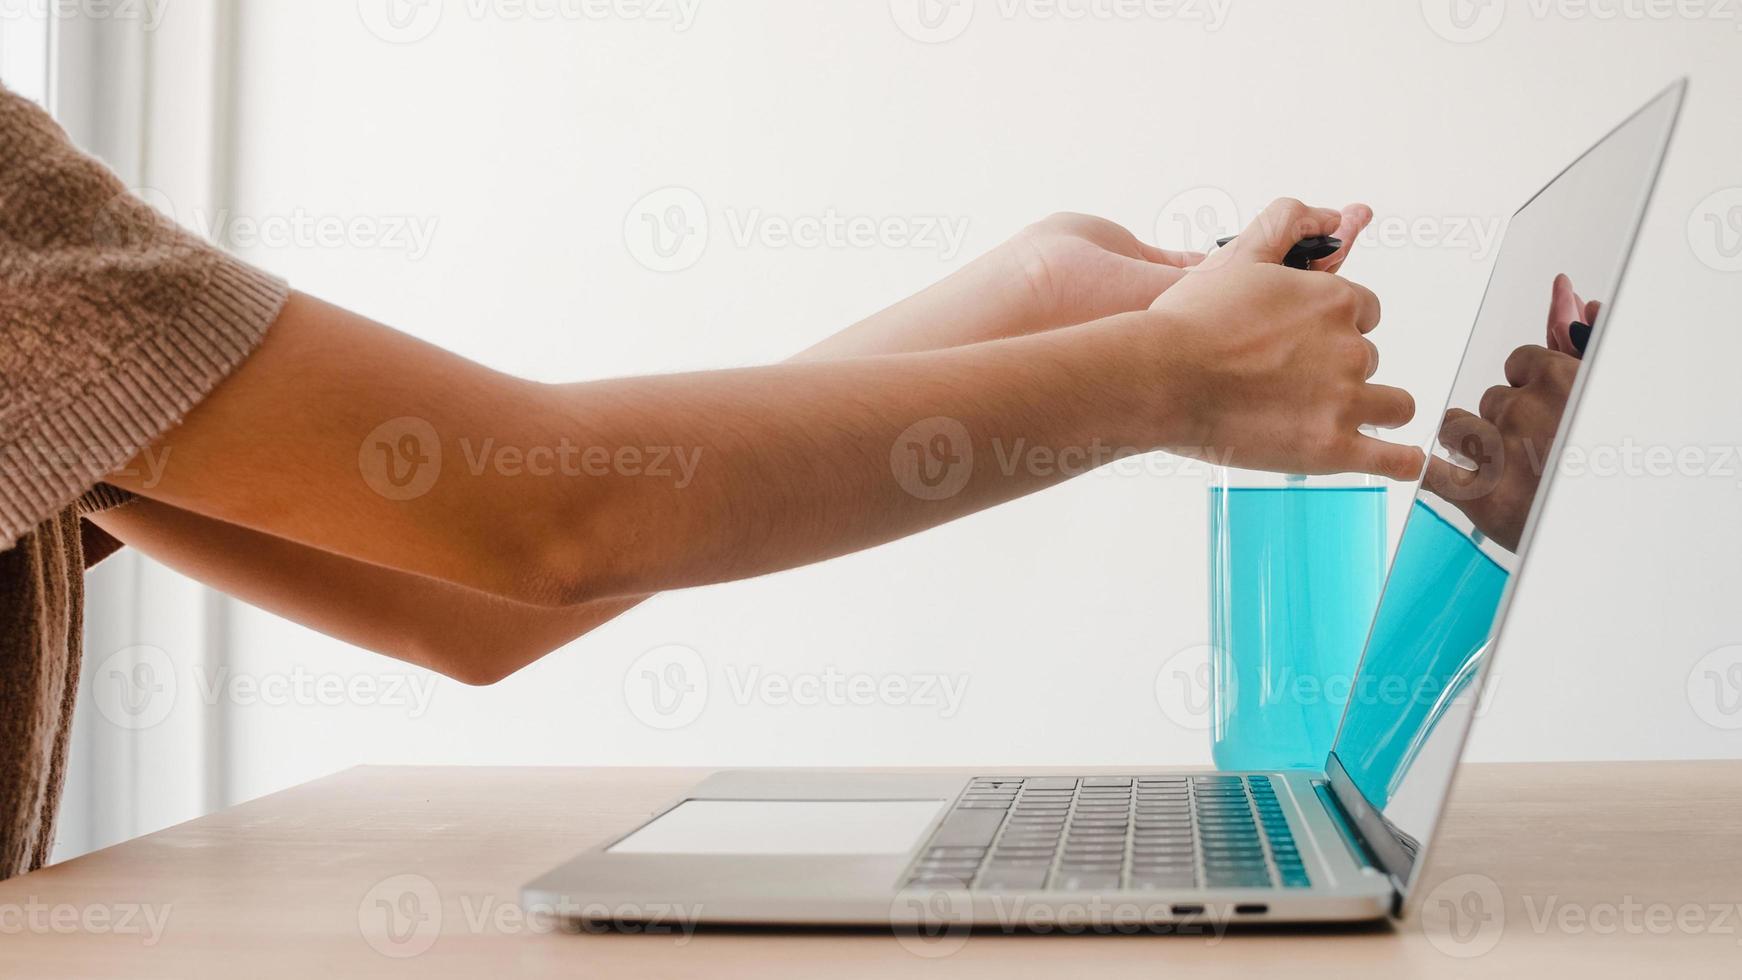 Mujer asiática que usa alcohol gel desinfectante lavarse las manos antes de trabajar en la computadora portátil para proteger el coronavirus. Las mujeres empujan el alcohol para limpiar por higiene cuando el distanciamiento social se queda en casa y el tiempo de auto cuarentena. foto